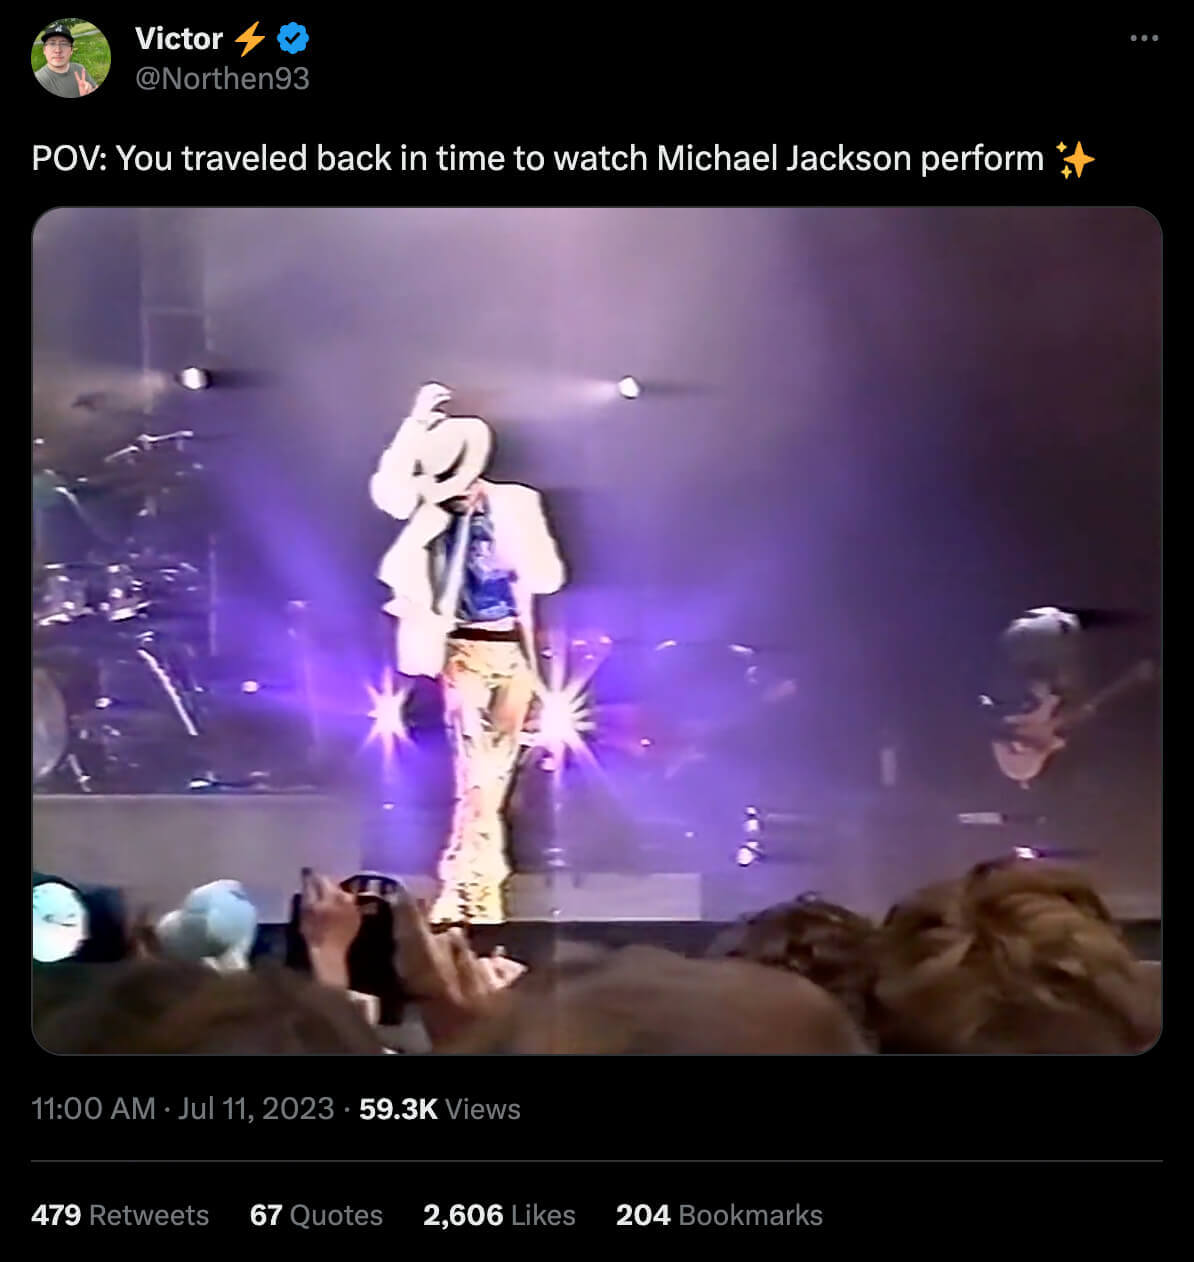 POV tweet about a past Michael Jackson concert